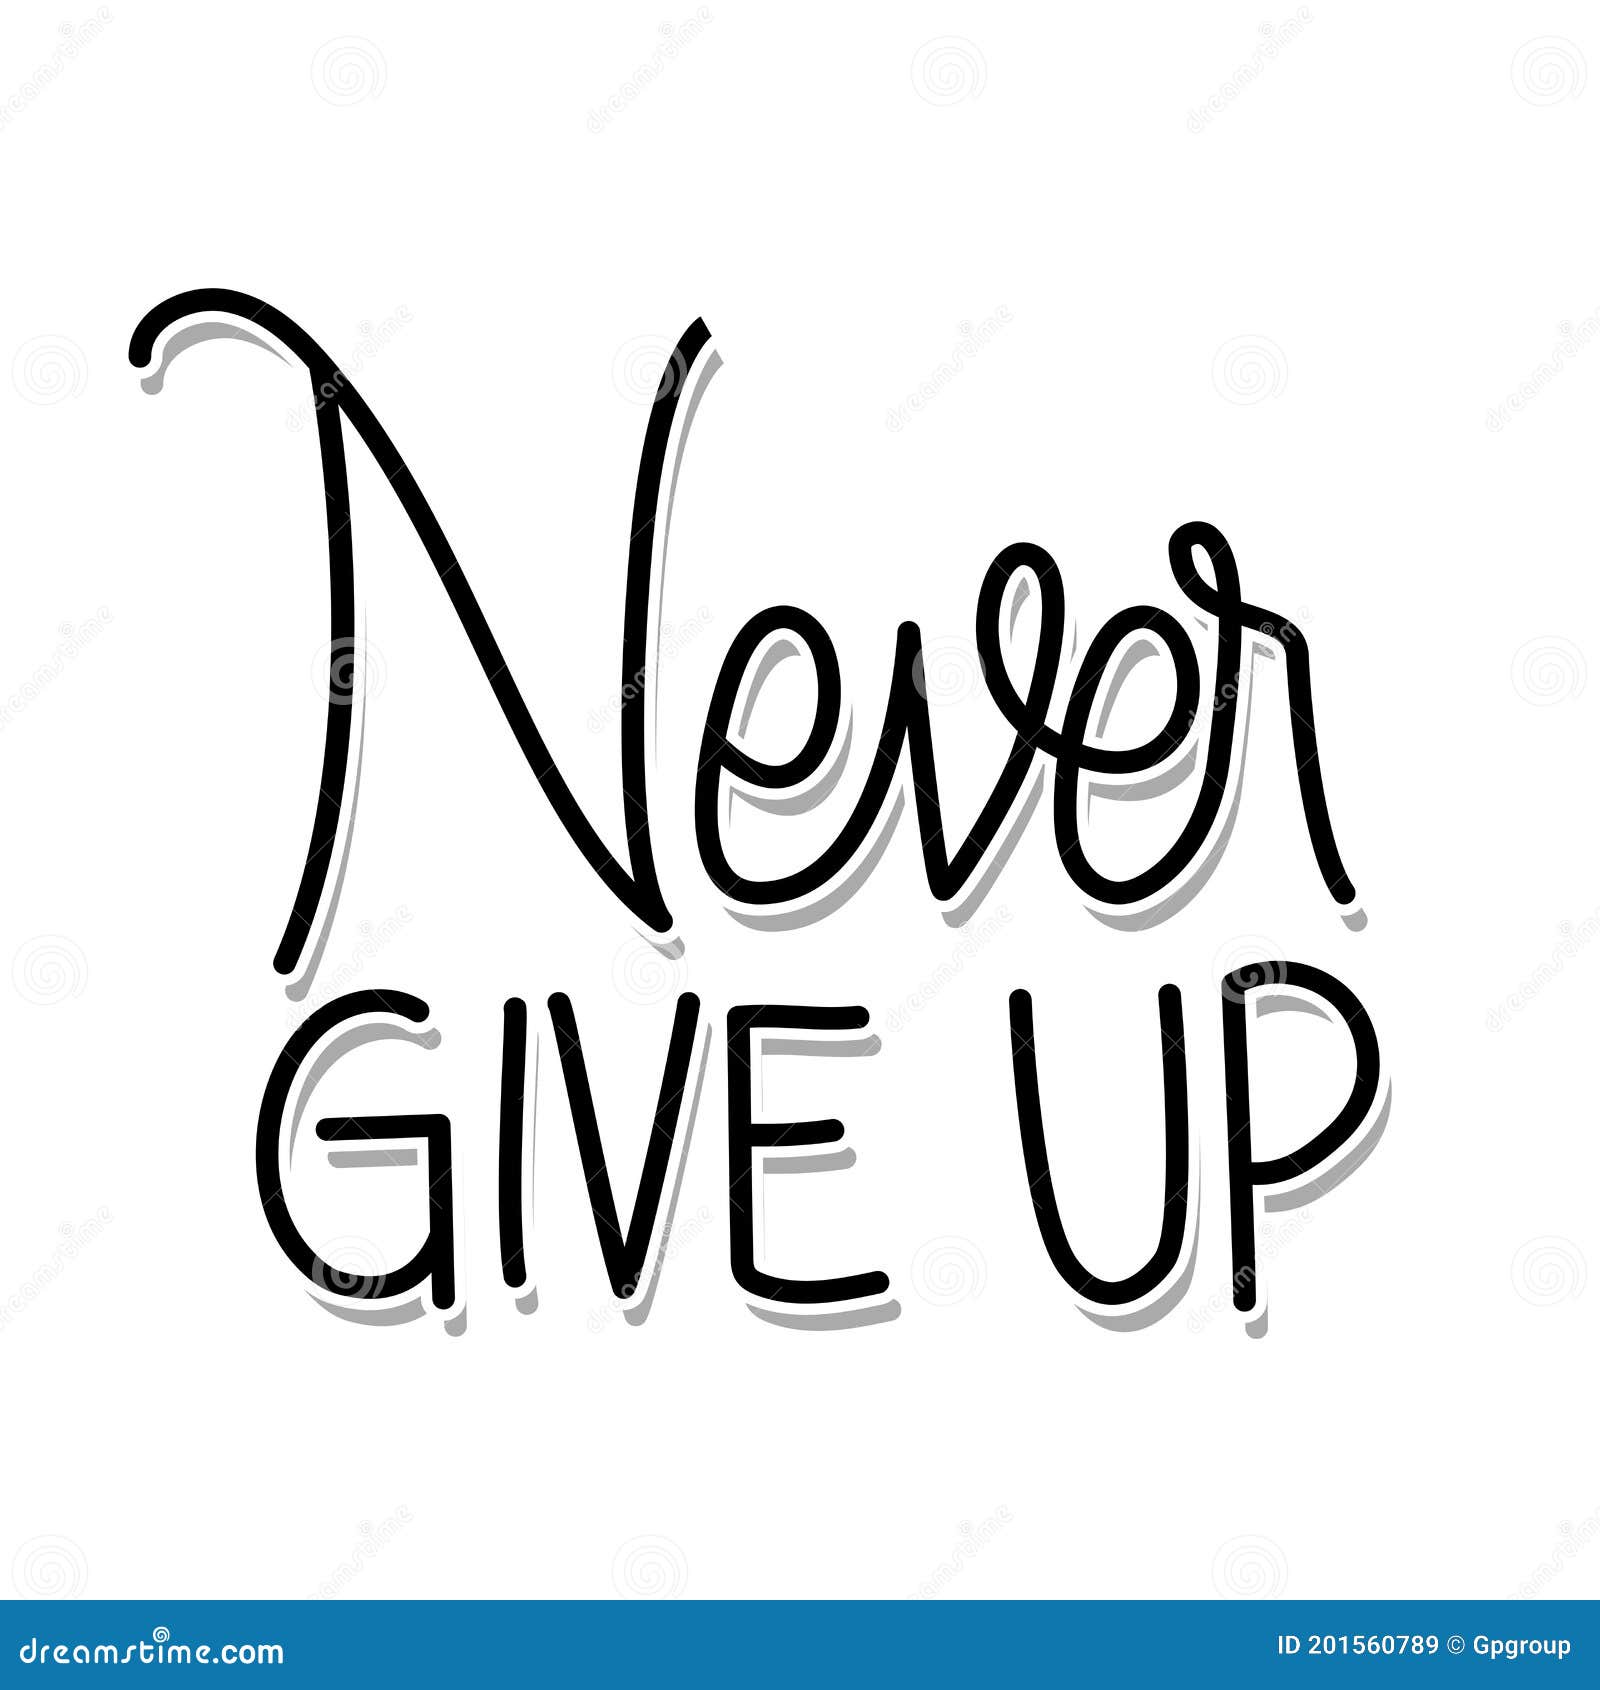 Never give in Nunca desista!!